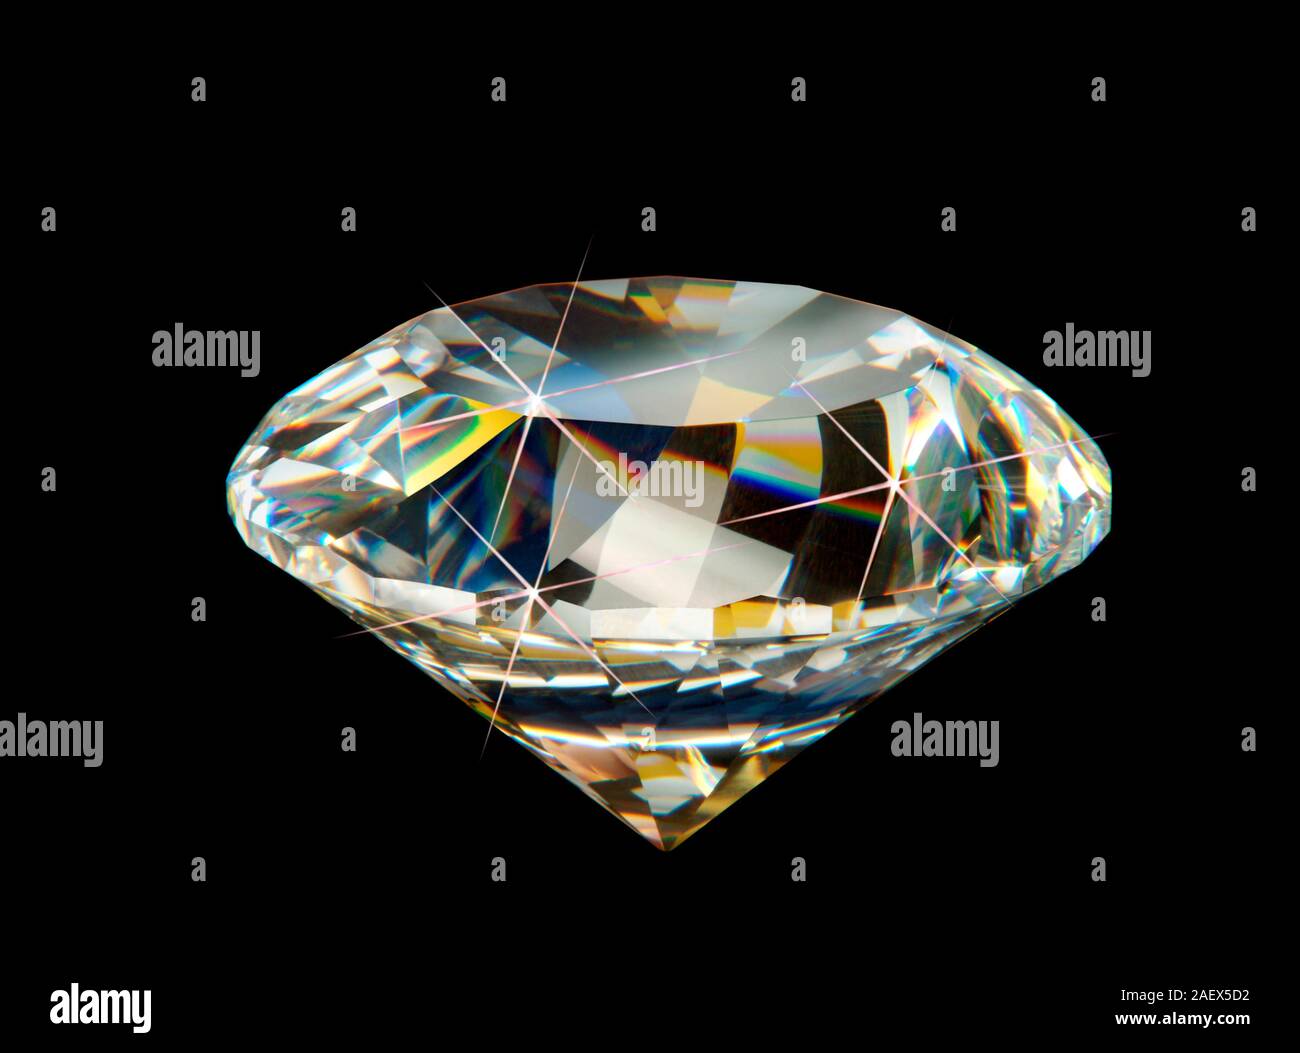 Diamond precious stone. Stock Photo